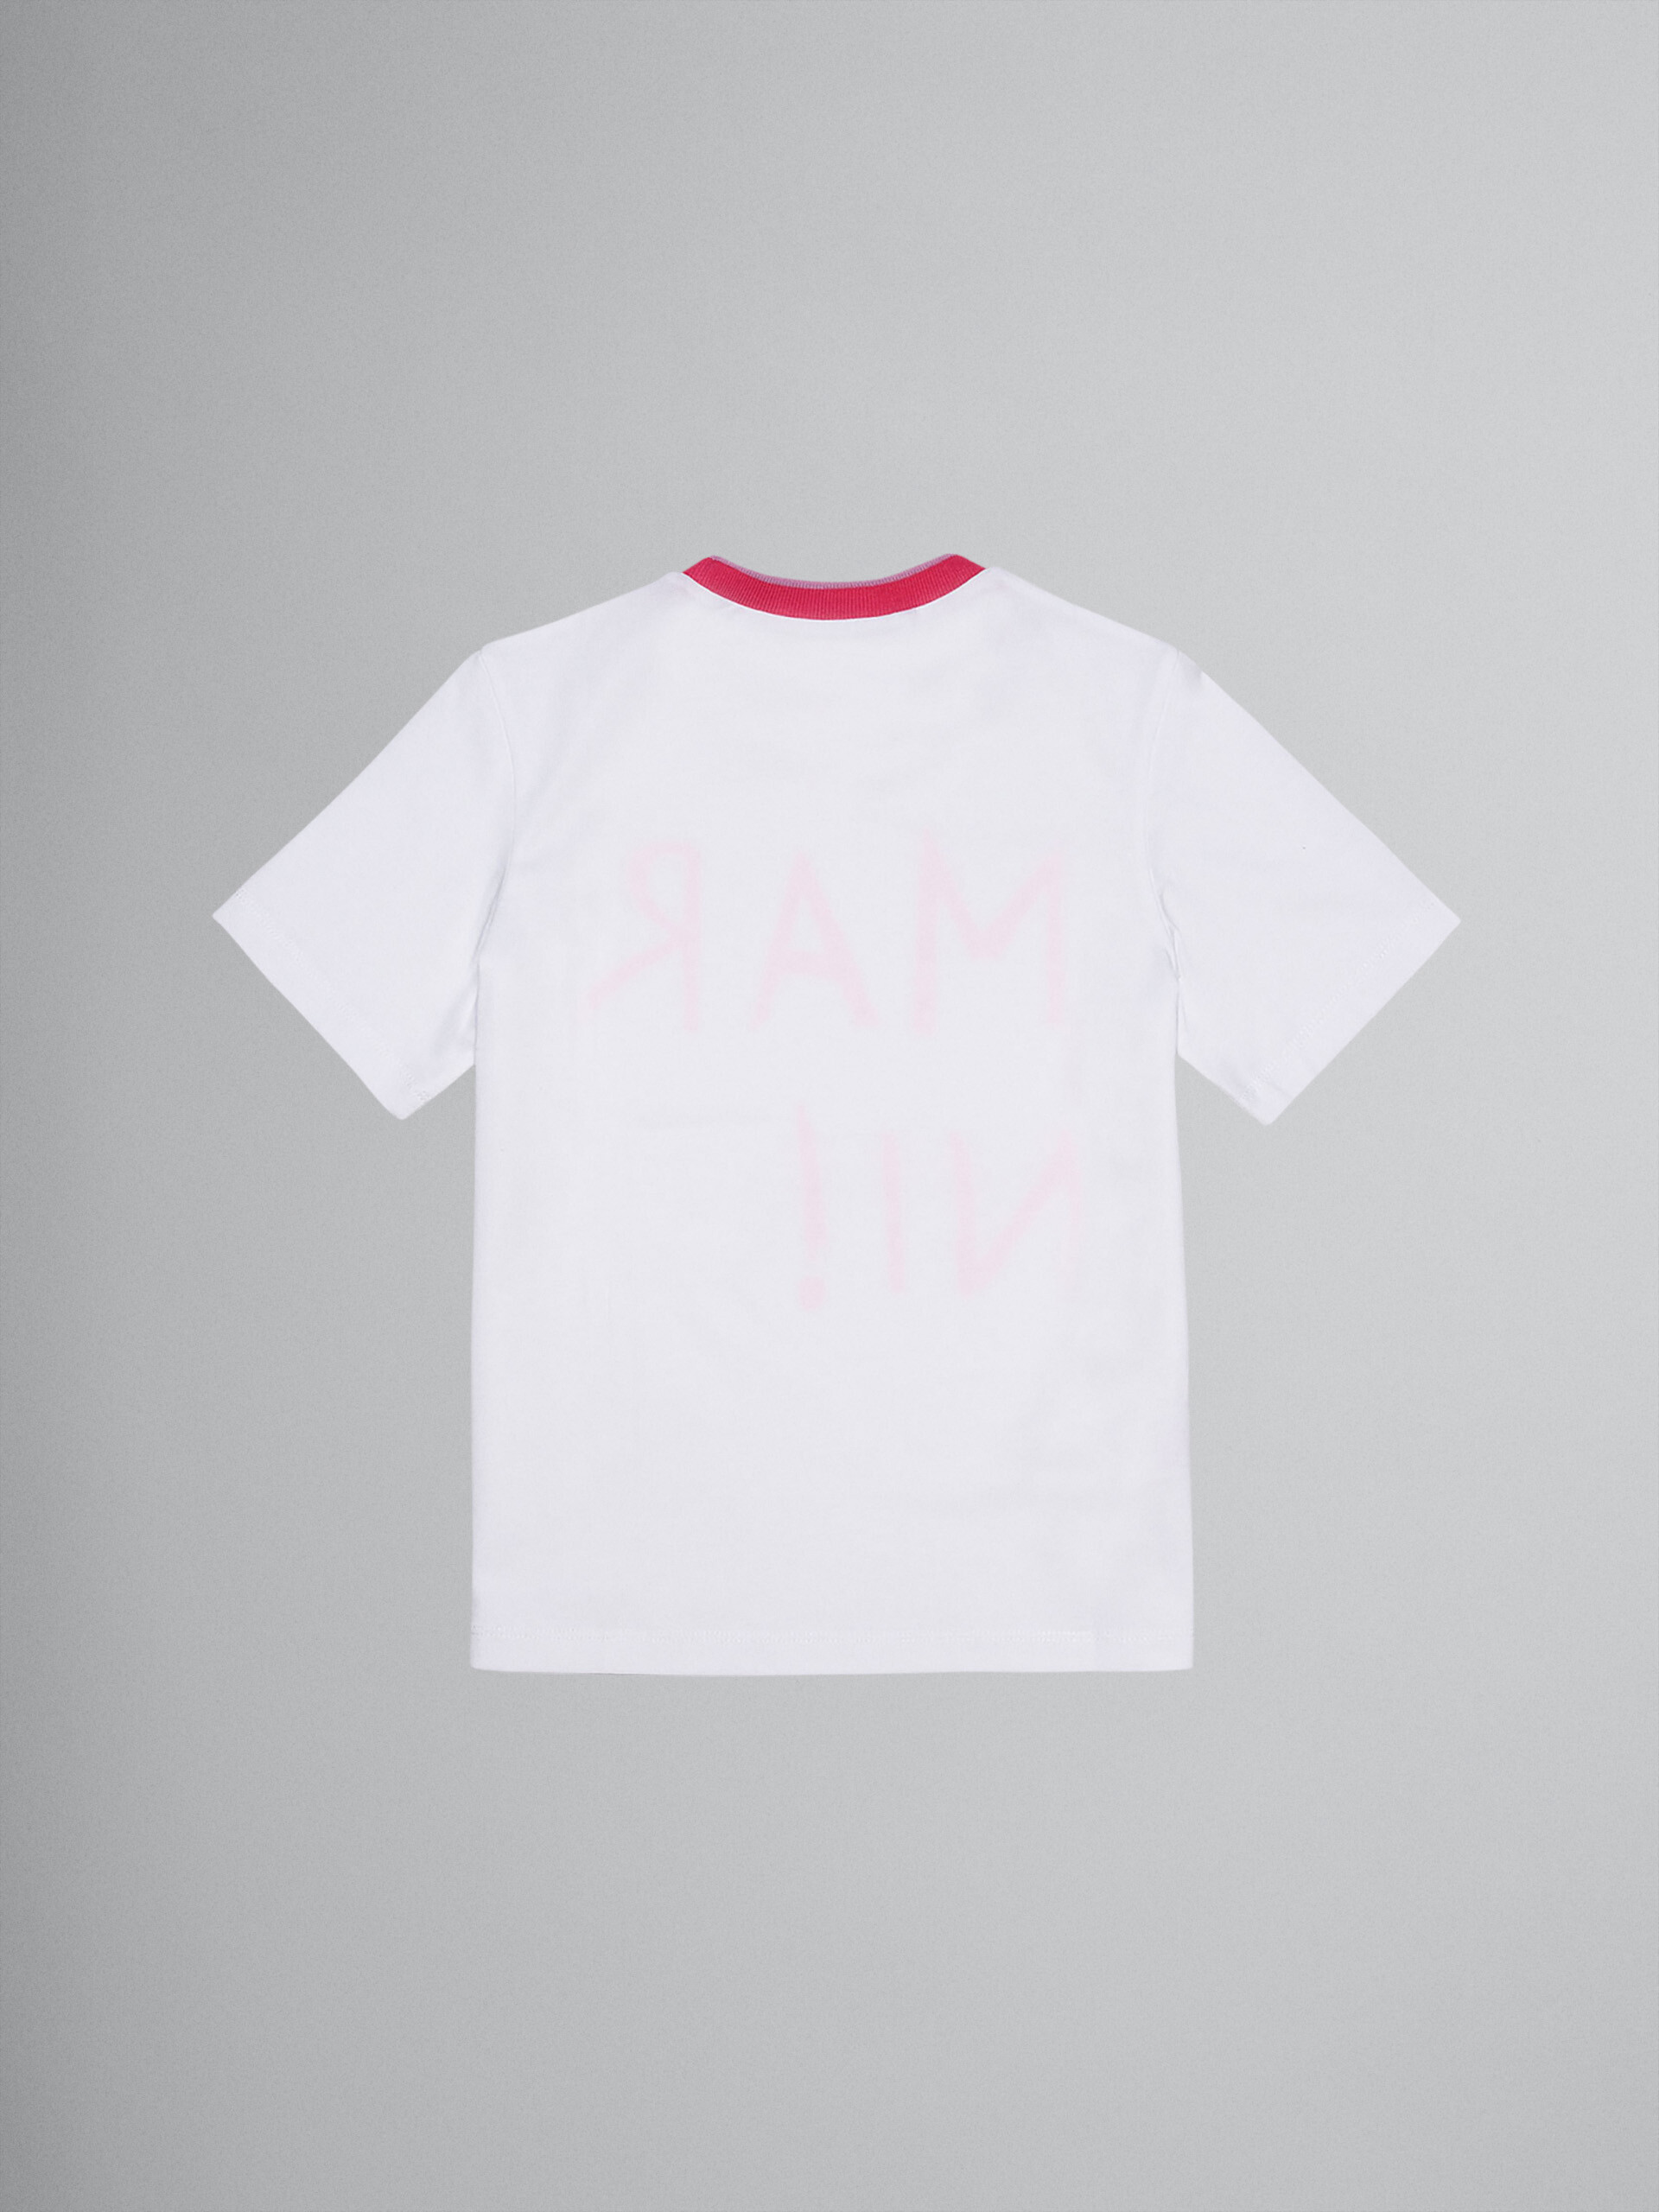 Graffiti-styled logo cotton jersey T-shirt - T-shirts - Image 2